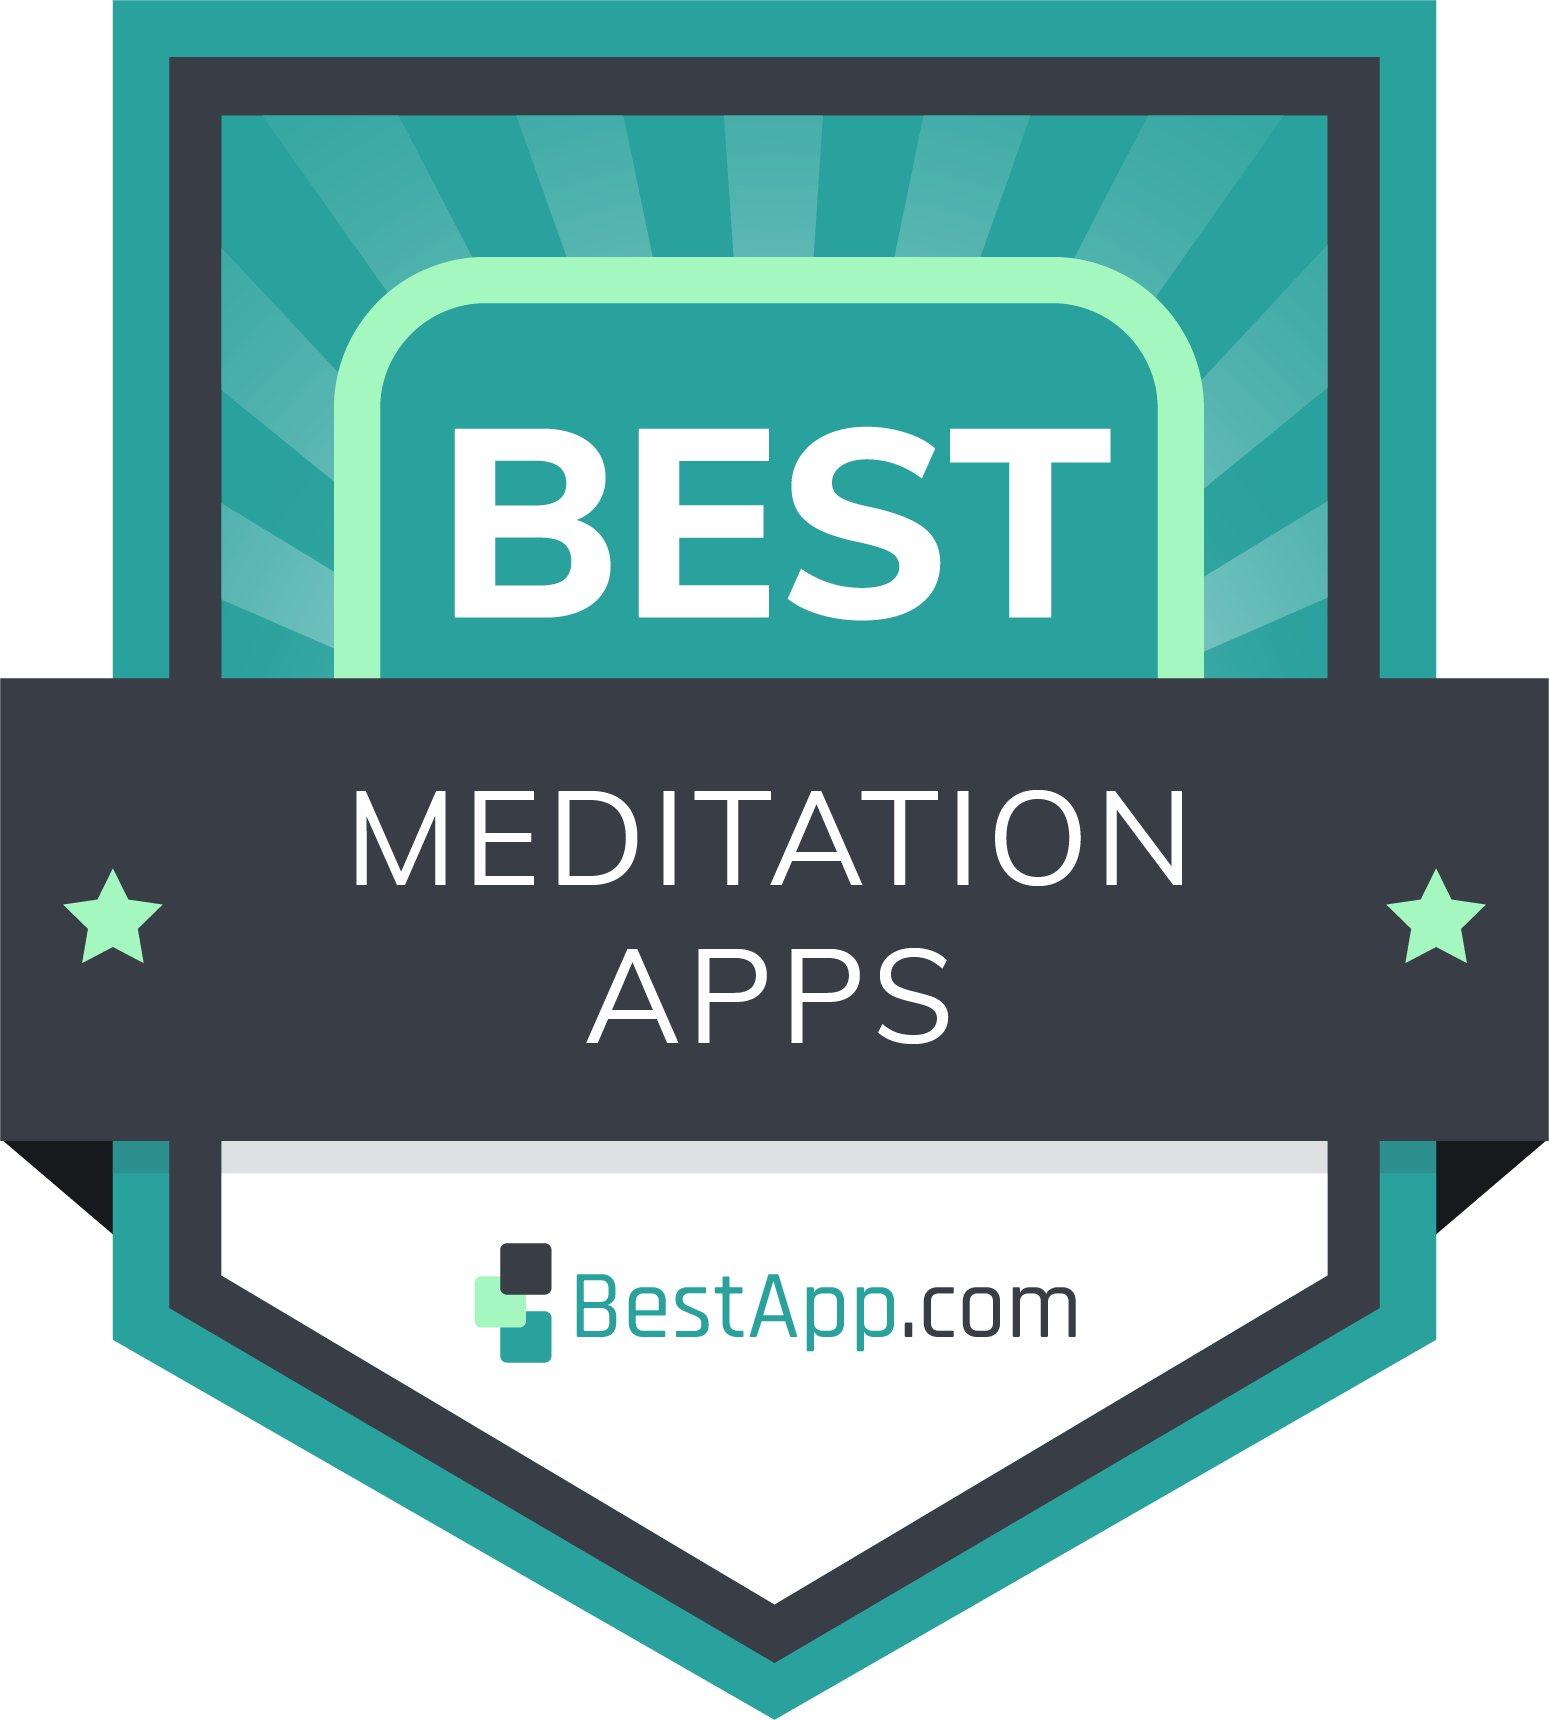 Best Meditation Apps Badge